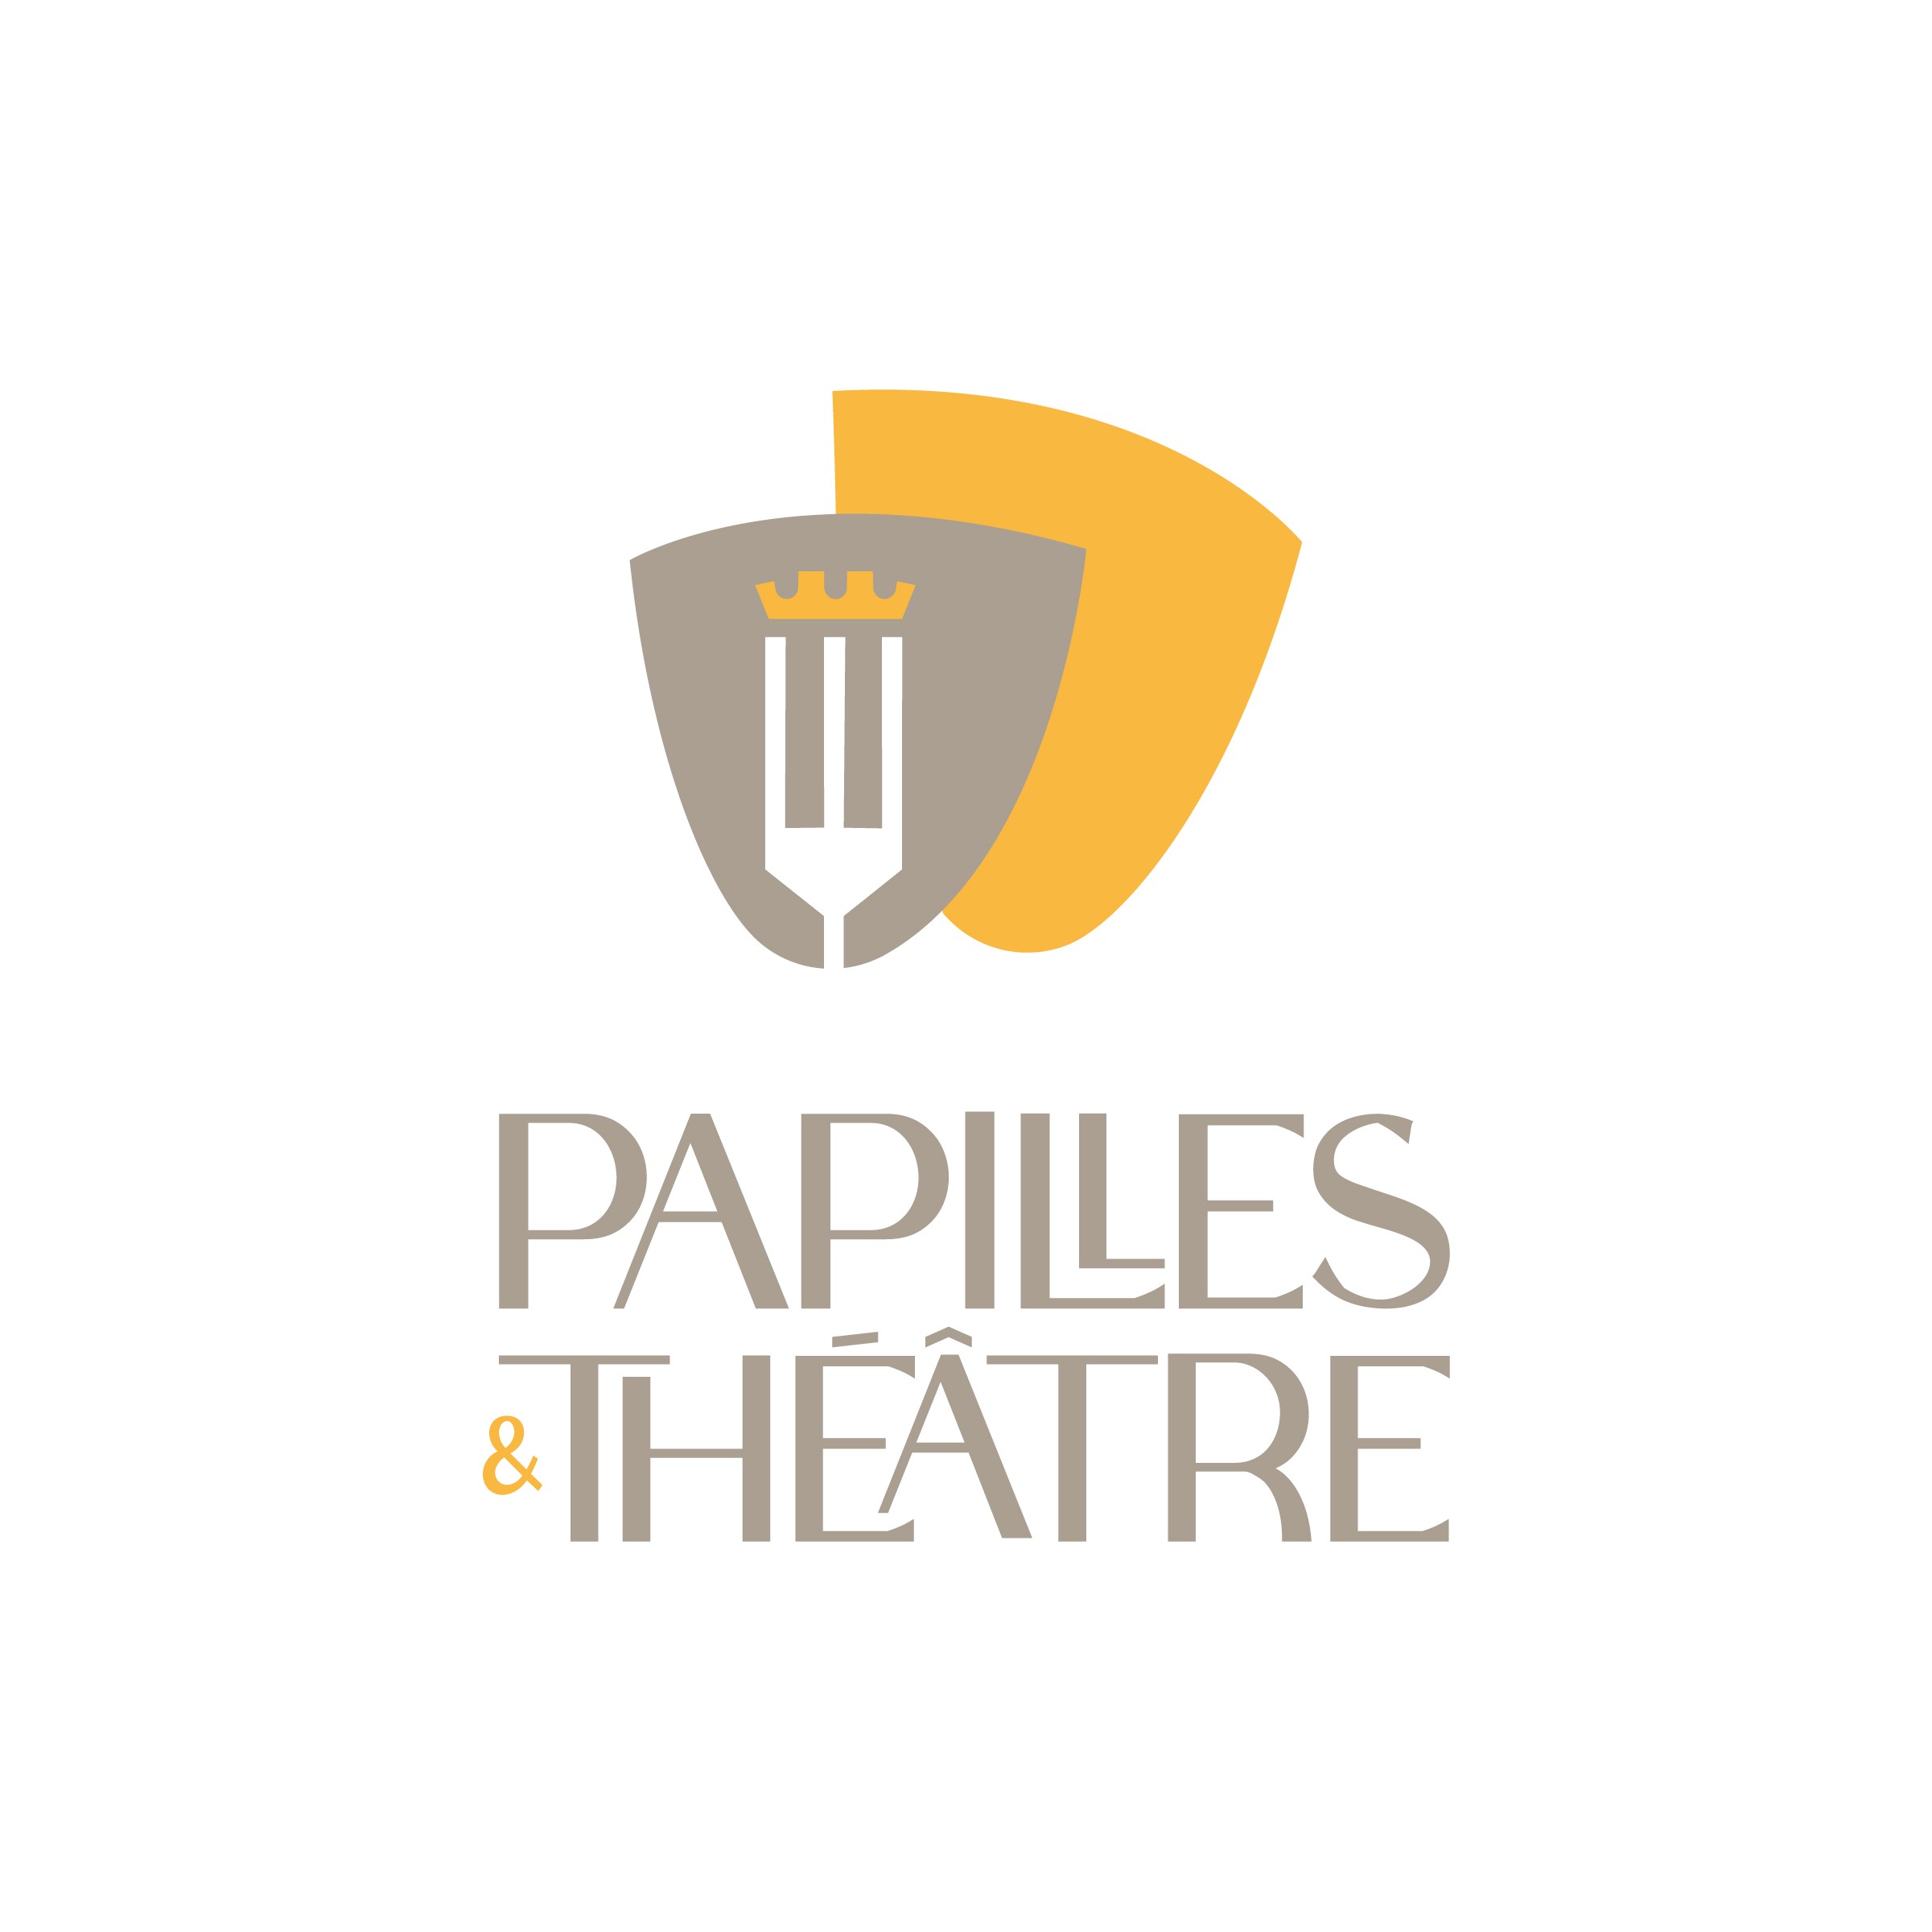 Papilles & Théâtre